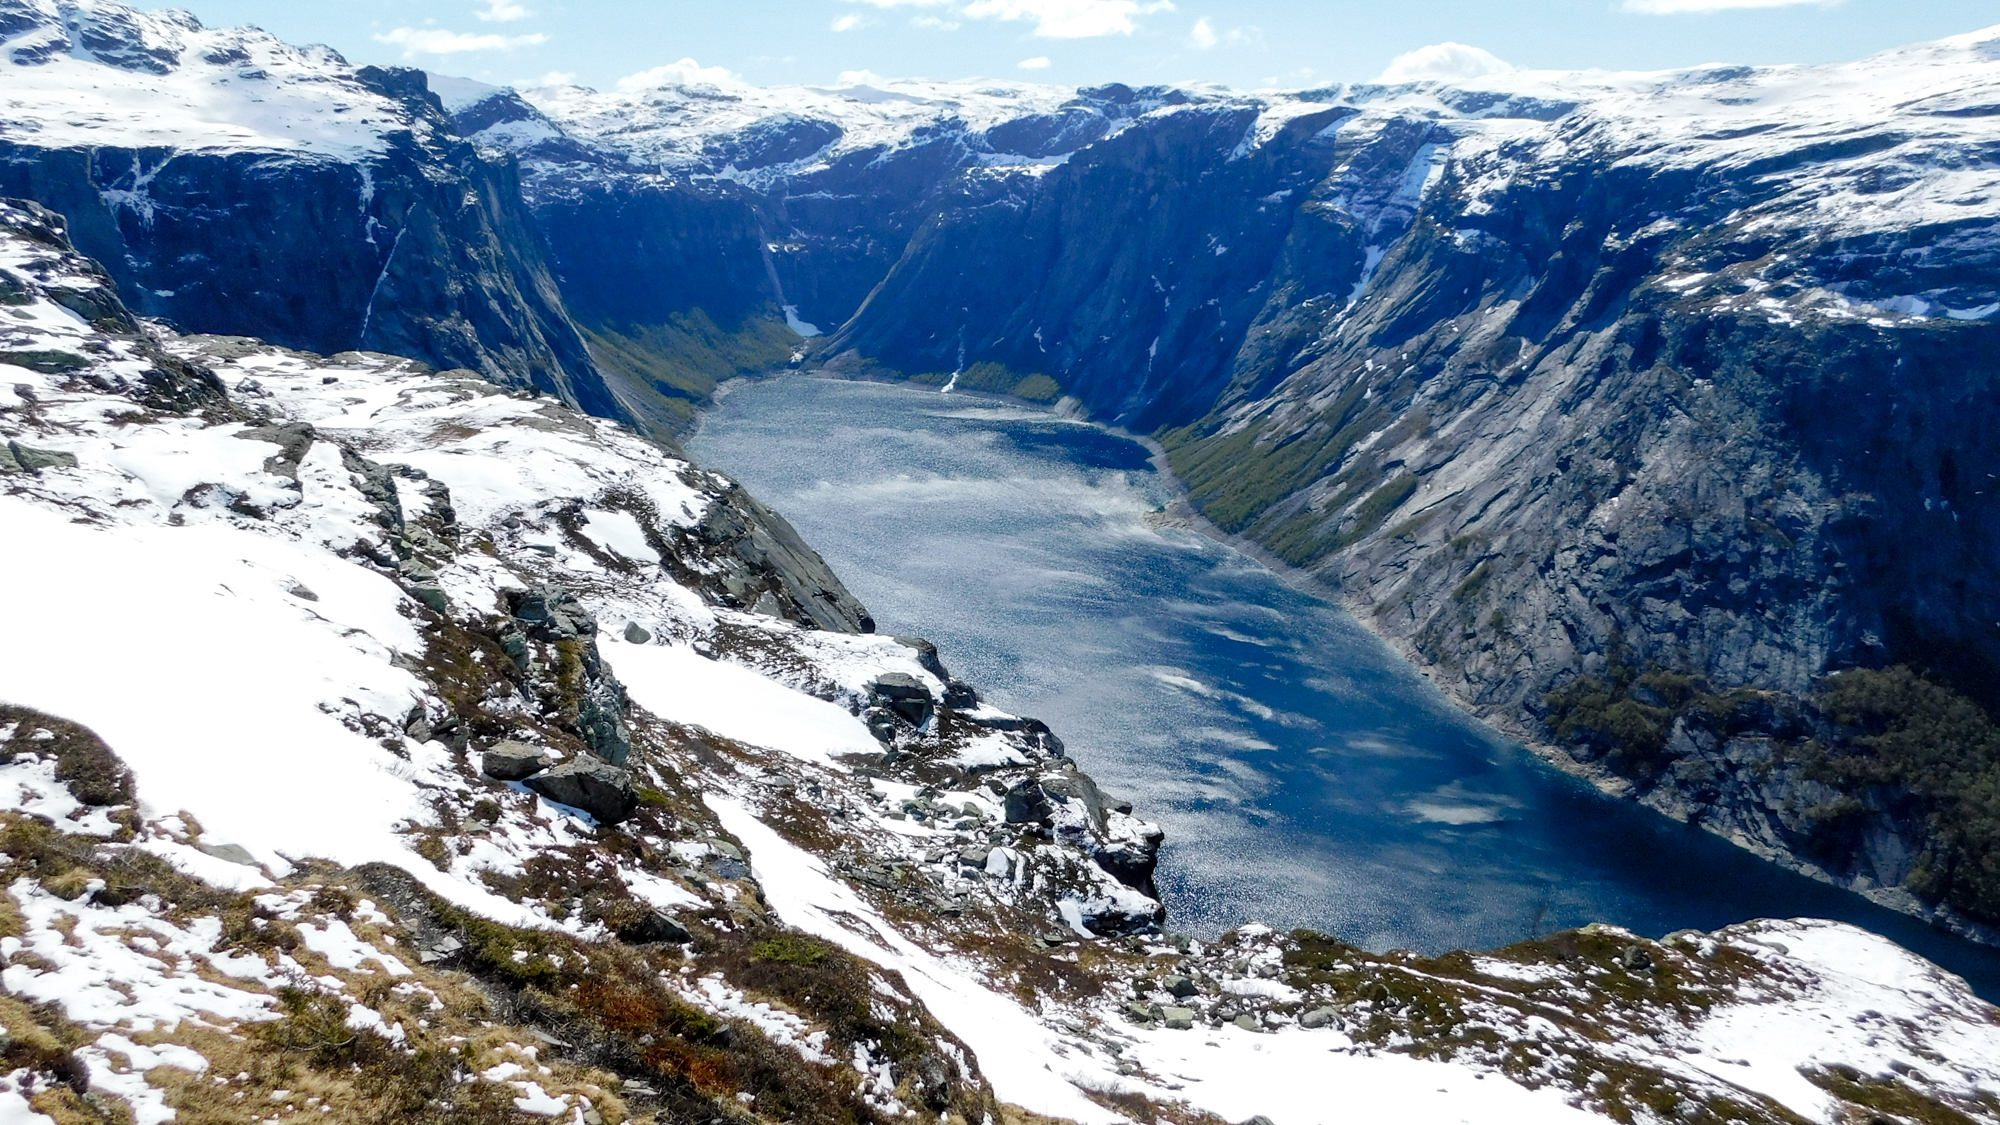 Jazero Ringedalsvatnet sa objaví asi v troch štvrtinách trasy.